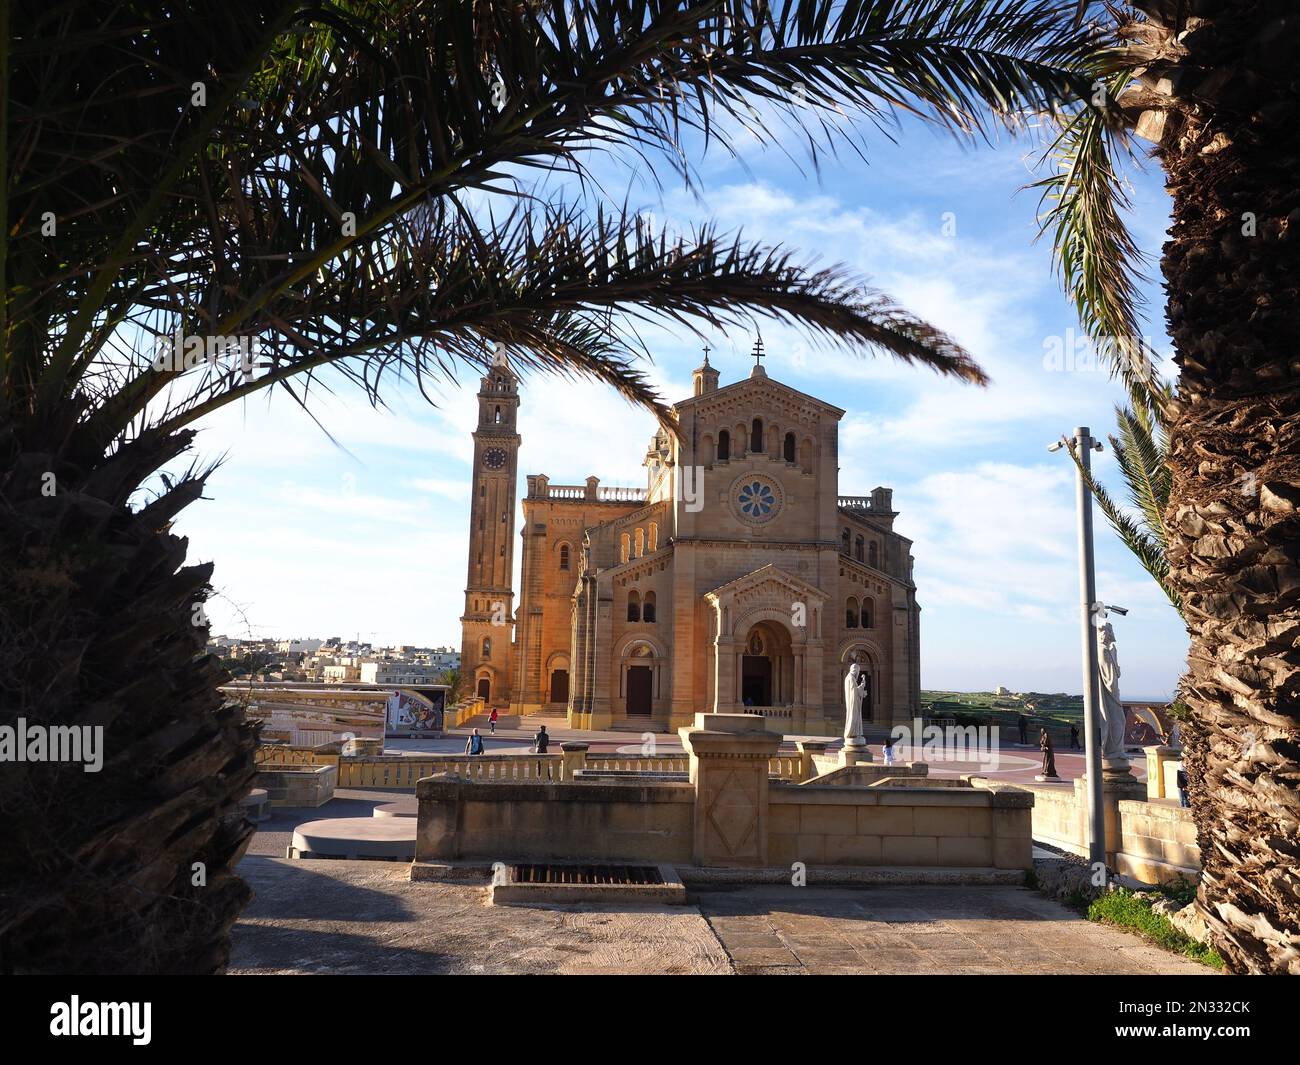 Une église catholique (Ta' Pinu Mill) et des palmiers sous le ciel bleu méditerranéen - île de Gozo Malte Banque D'Images